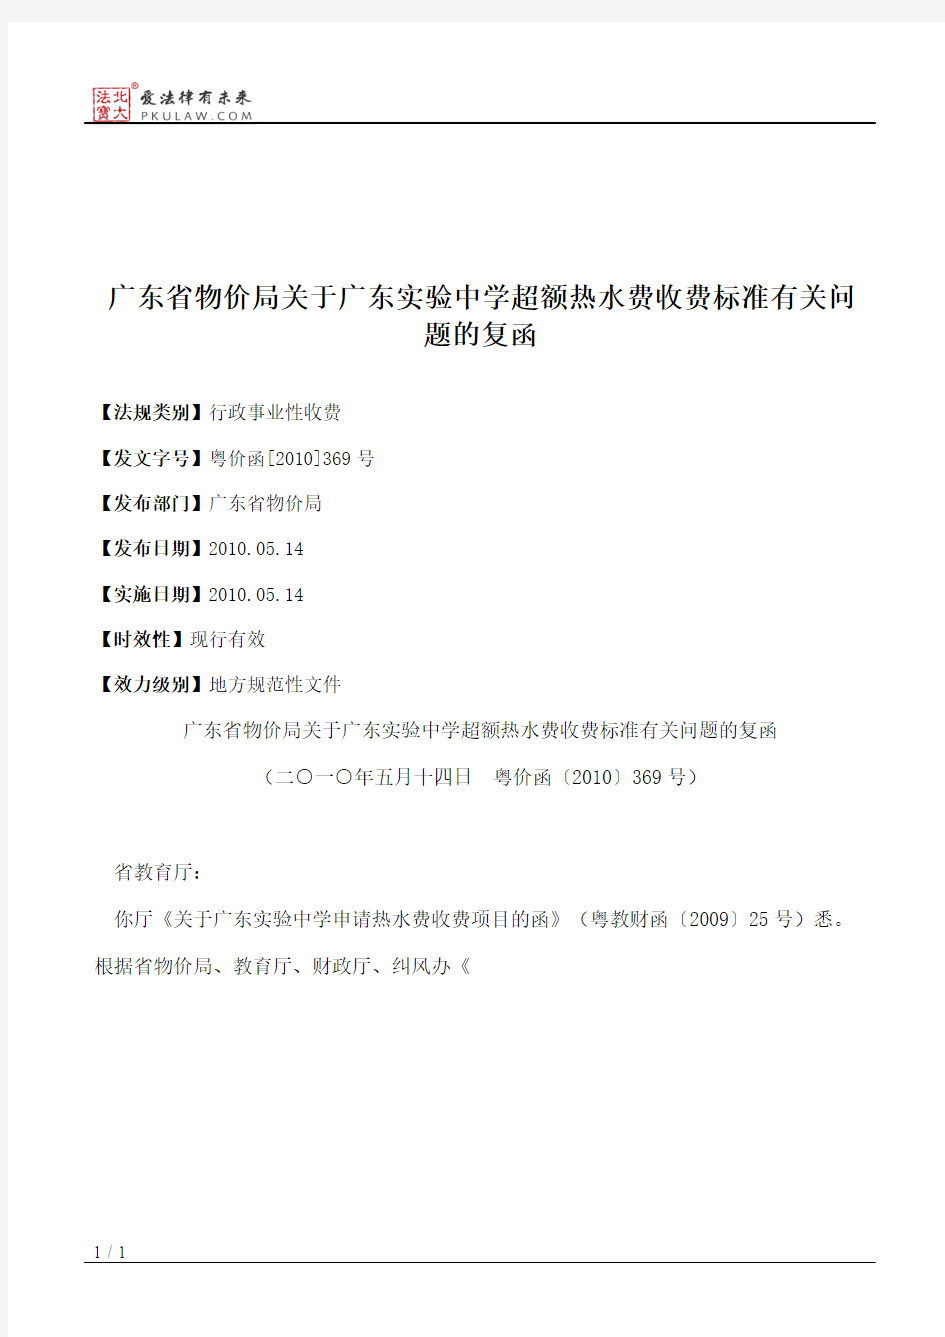 广东省物价局关于广东实验中学超额热水费收费标准有关问题的复函